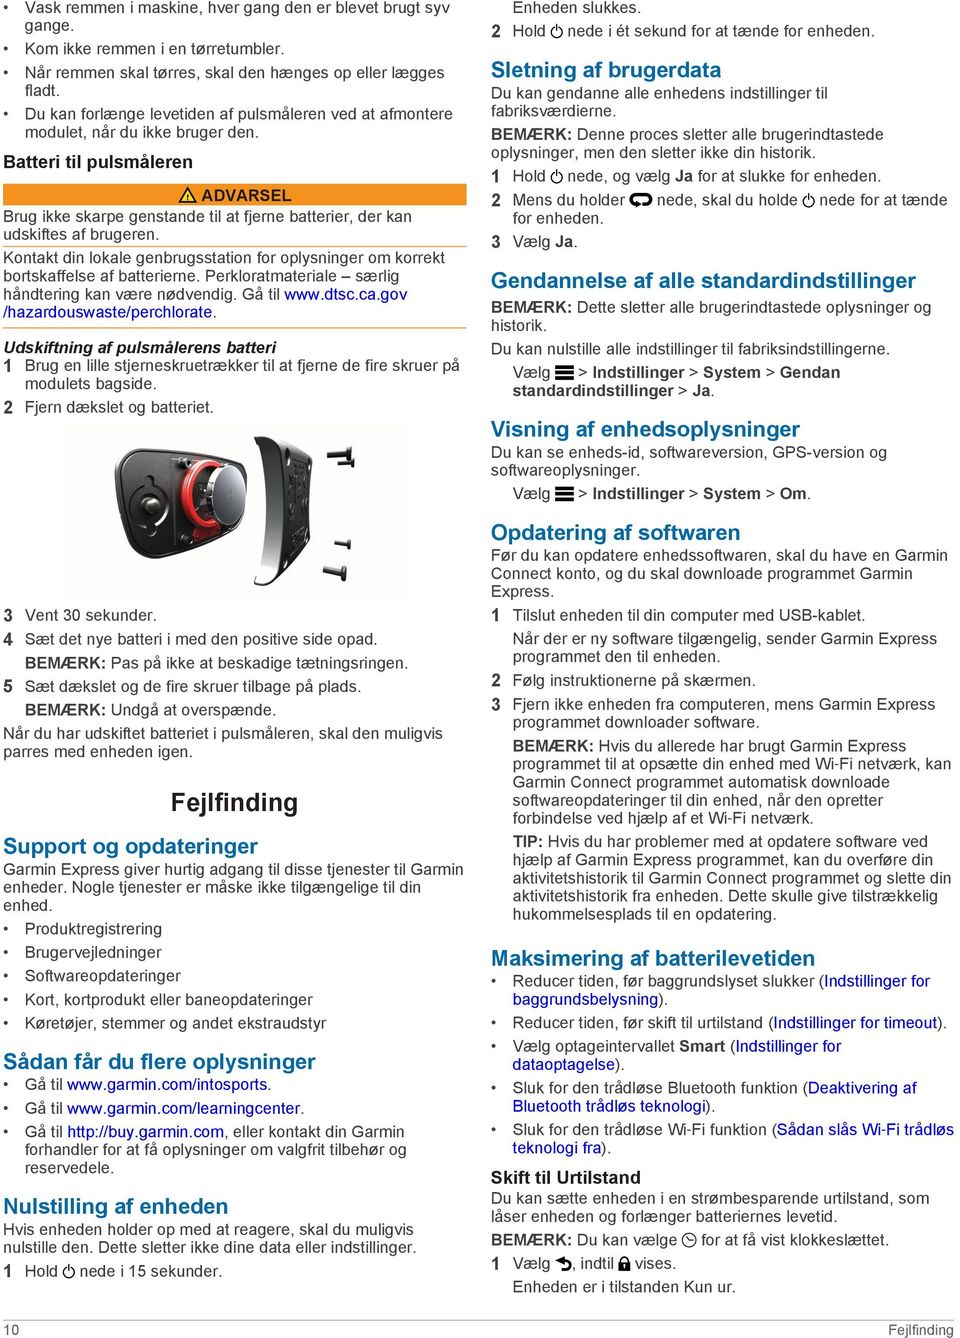 Forerunner 620 Brugervejledning - PDF Free Download